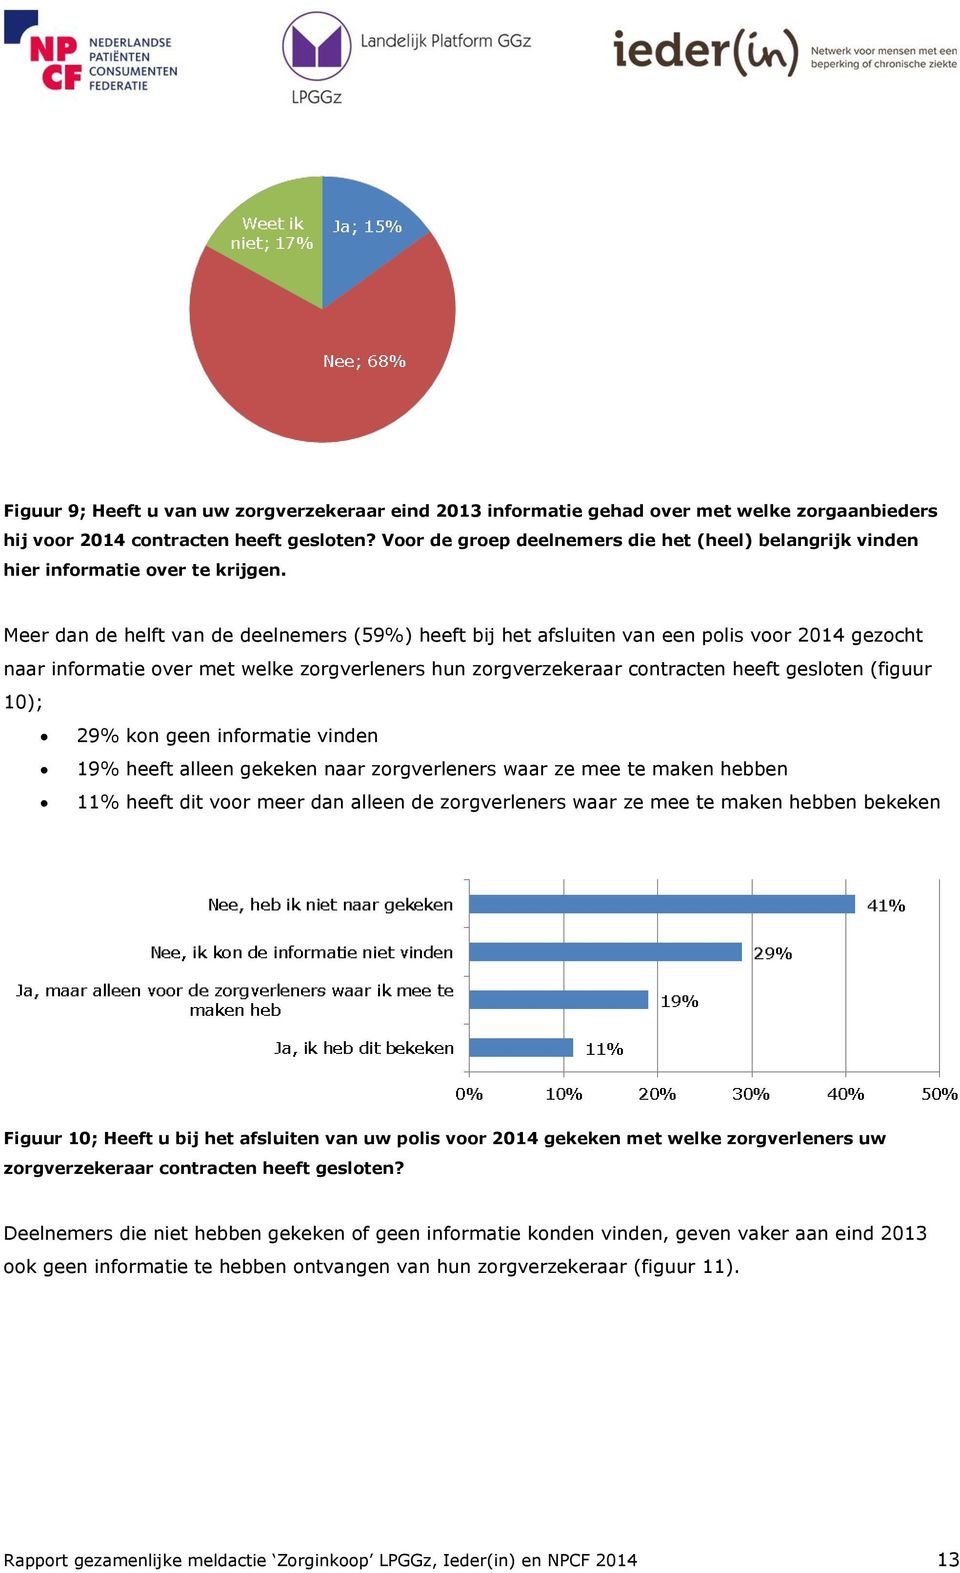 Meer dan de helft van de deelnemers (59%) heeft bij het afsluiten van een polis voor 2014 gezocht naar informatie over met welke zorgverleners hun zorgverzekeraar contracten heeft gesloten (figuur